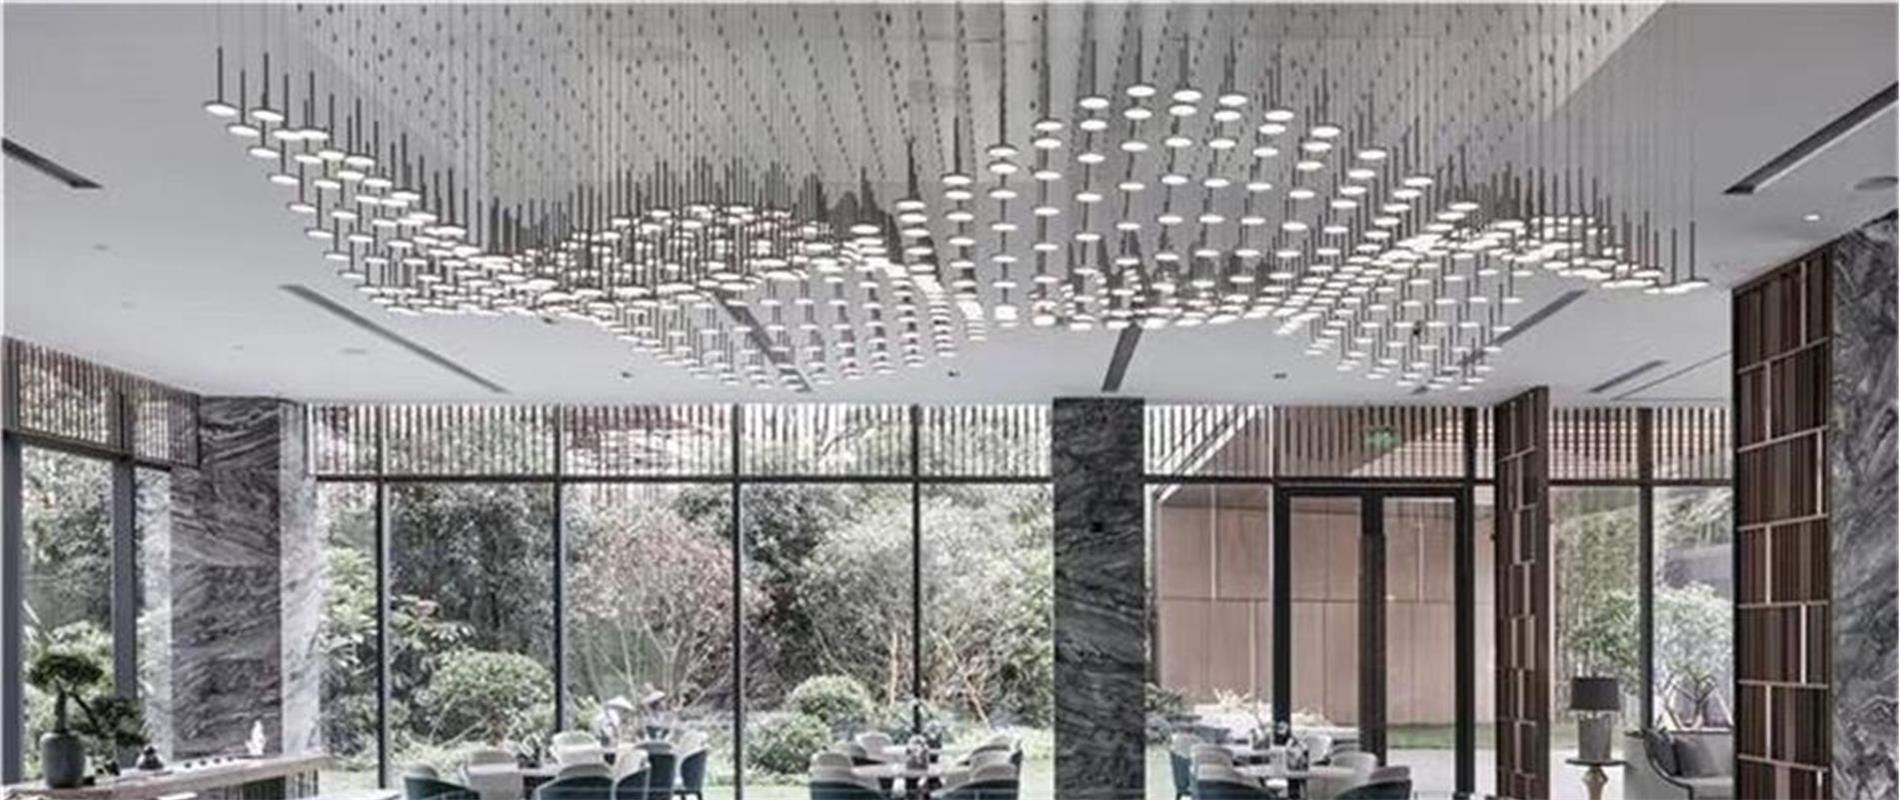 DUTTI LED Non-standard Chandelier Modern Custom Pendant Ceiling Lighting Fixtures Crystal Best Price OEM